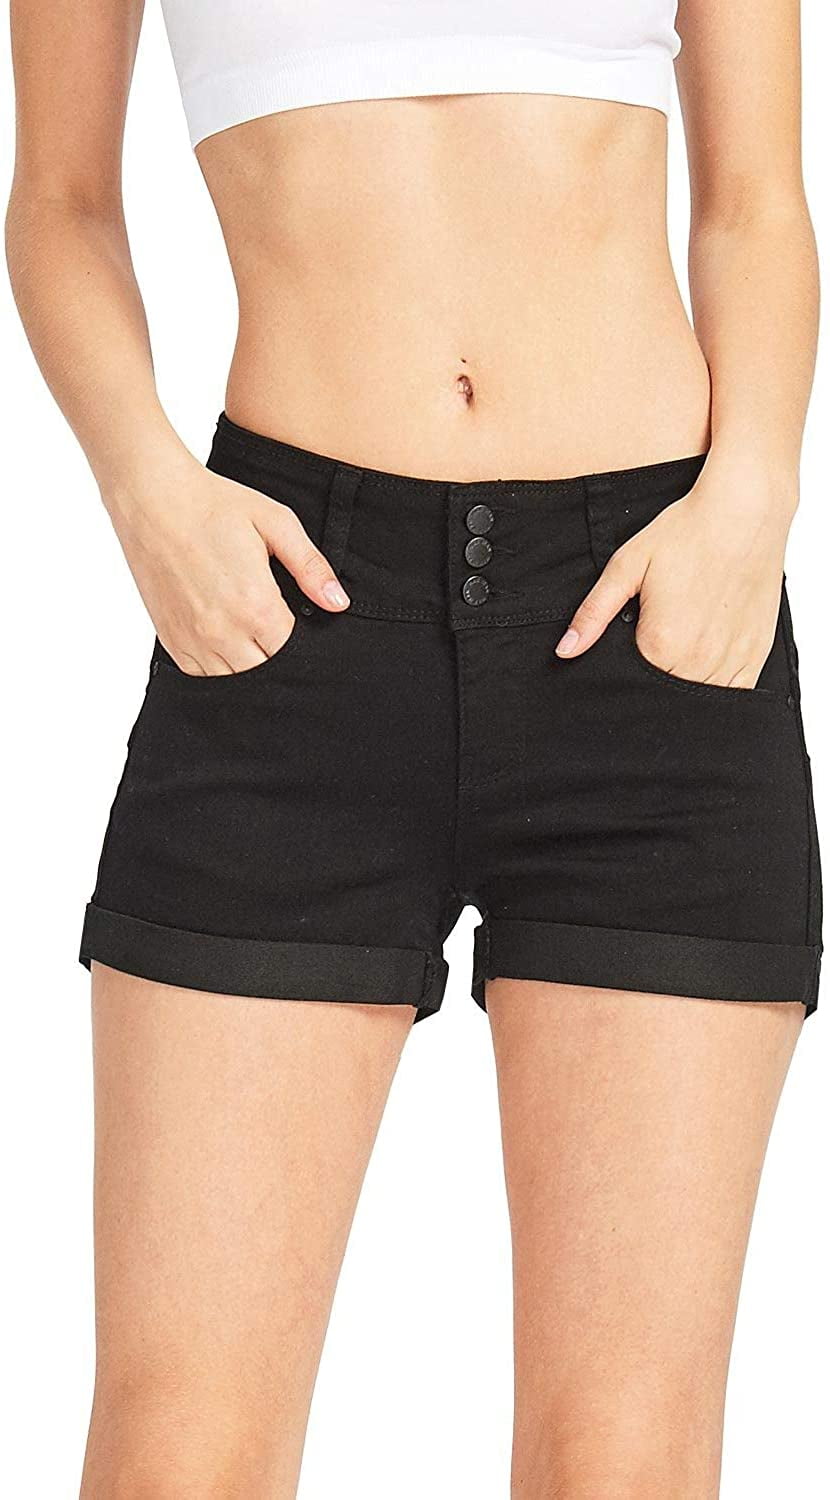 Wax - Wax Jeans Women's Juniors Cuffed Hem Denim Shorts (Butt I Love ...